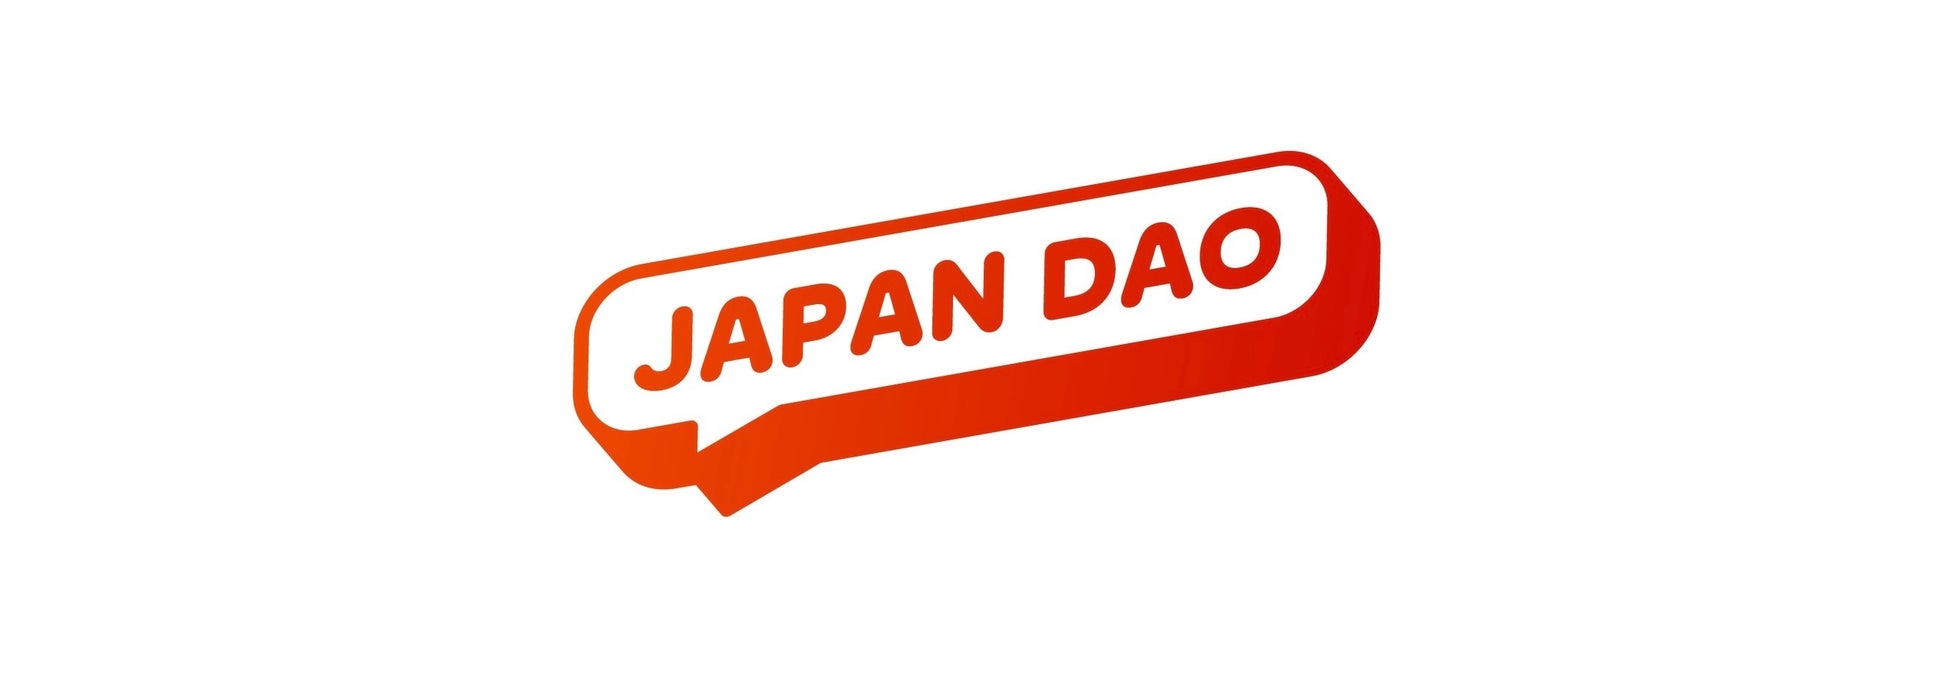 JAPAN DAO、ブロックチェーン技術を活用した最先端キャラクタースタジオを設立